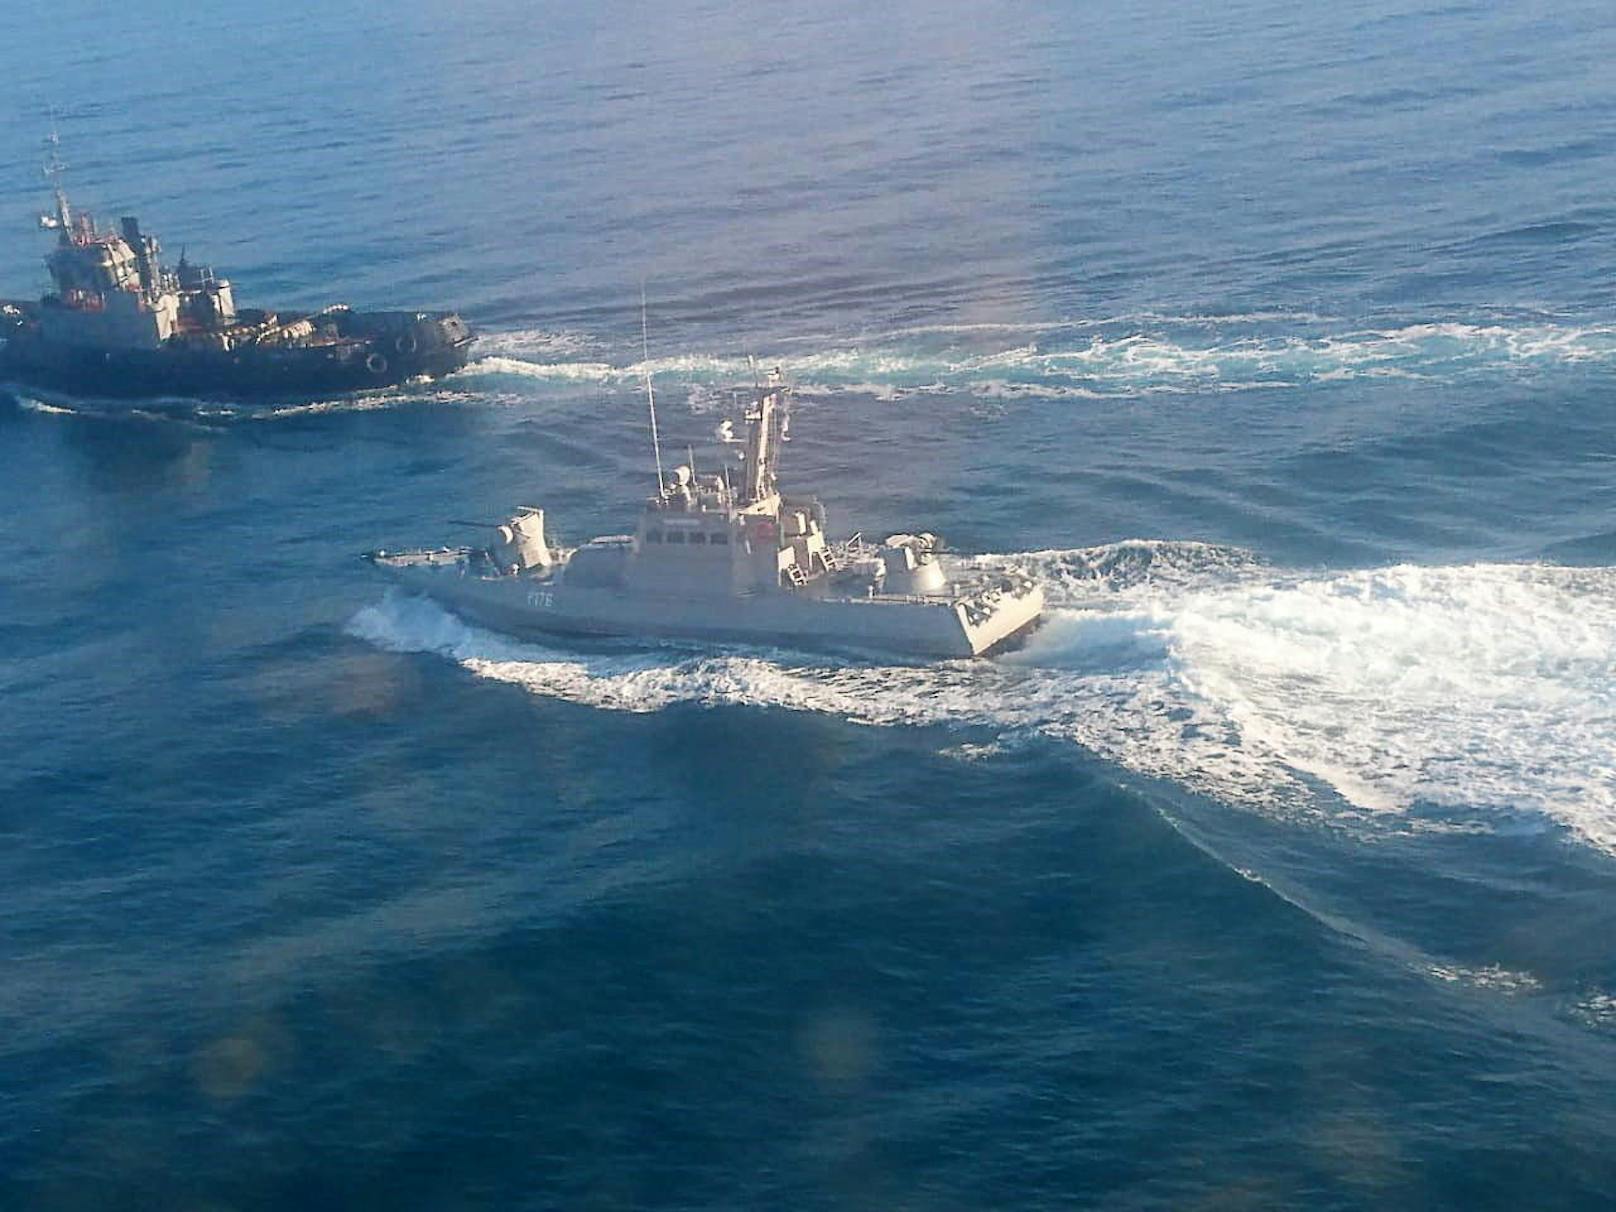 Russische Marineschiffe haben an der Meerenge von Kertsch zwei ukrainische Marine-Boote aufgebracht. Dabei sollen auch Schüsse abgefeuert sein sollen. Drei ukrainische Besatzungsmitglieder sollen verletzt worden sein.